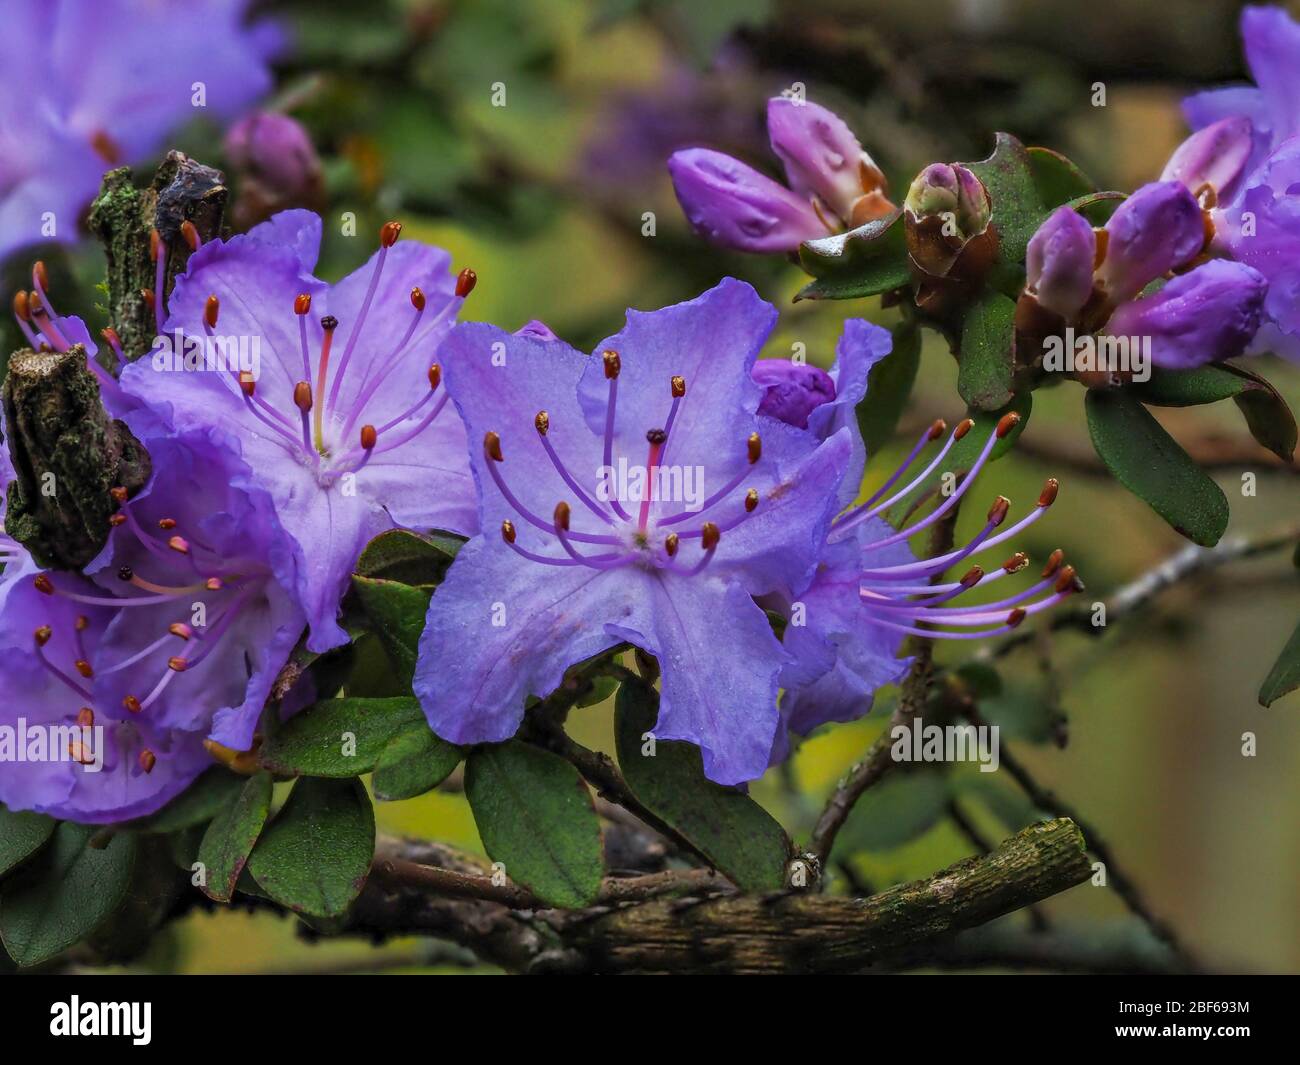 Nahaufnahme der schönen lila Blüten und Knospen eines Rhododendron-Busches in einem Garten im Frühjahr Stockfoto